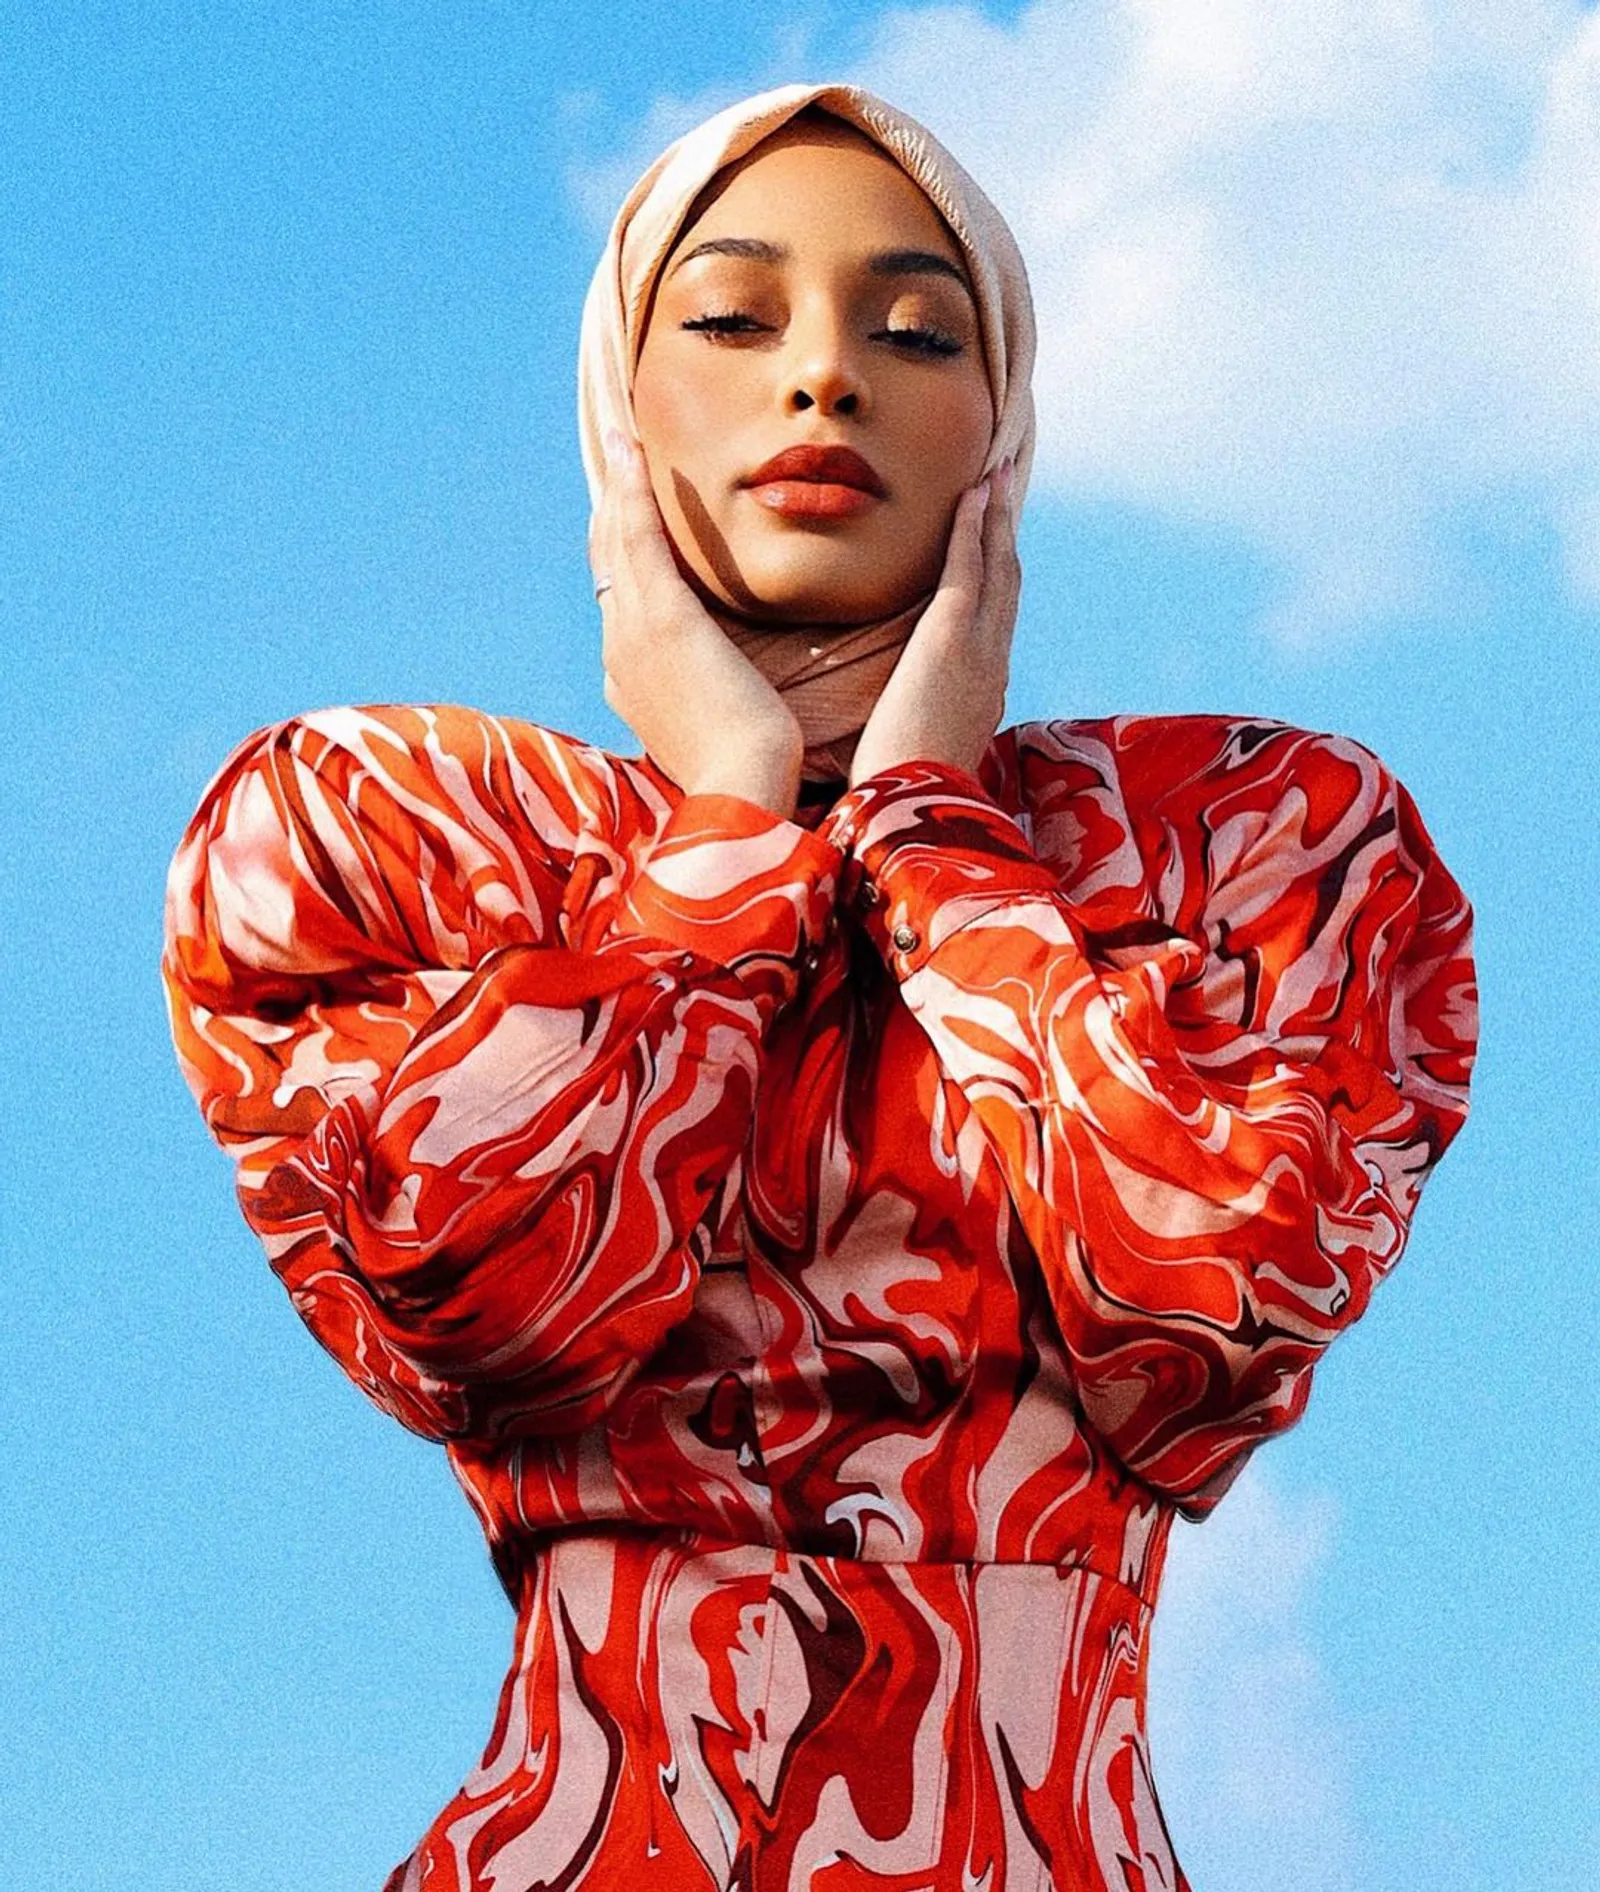 Rekomendasi Warna Hijab untuk Pemilik Warna Kulit Gelap